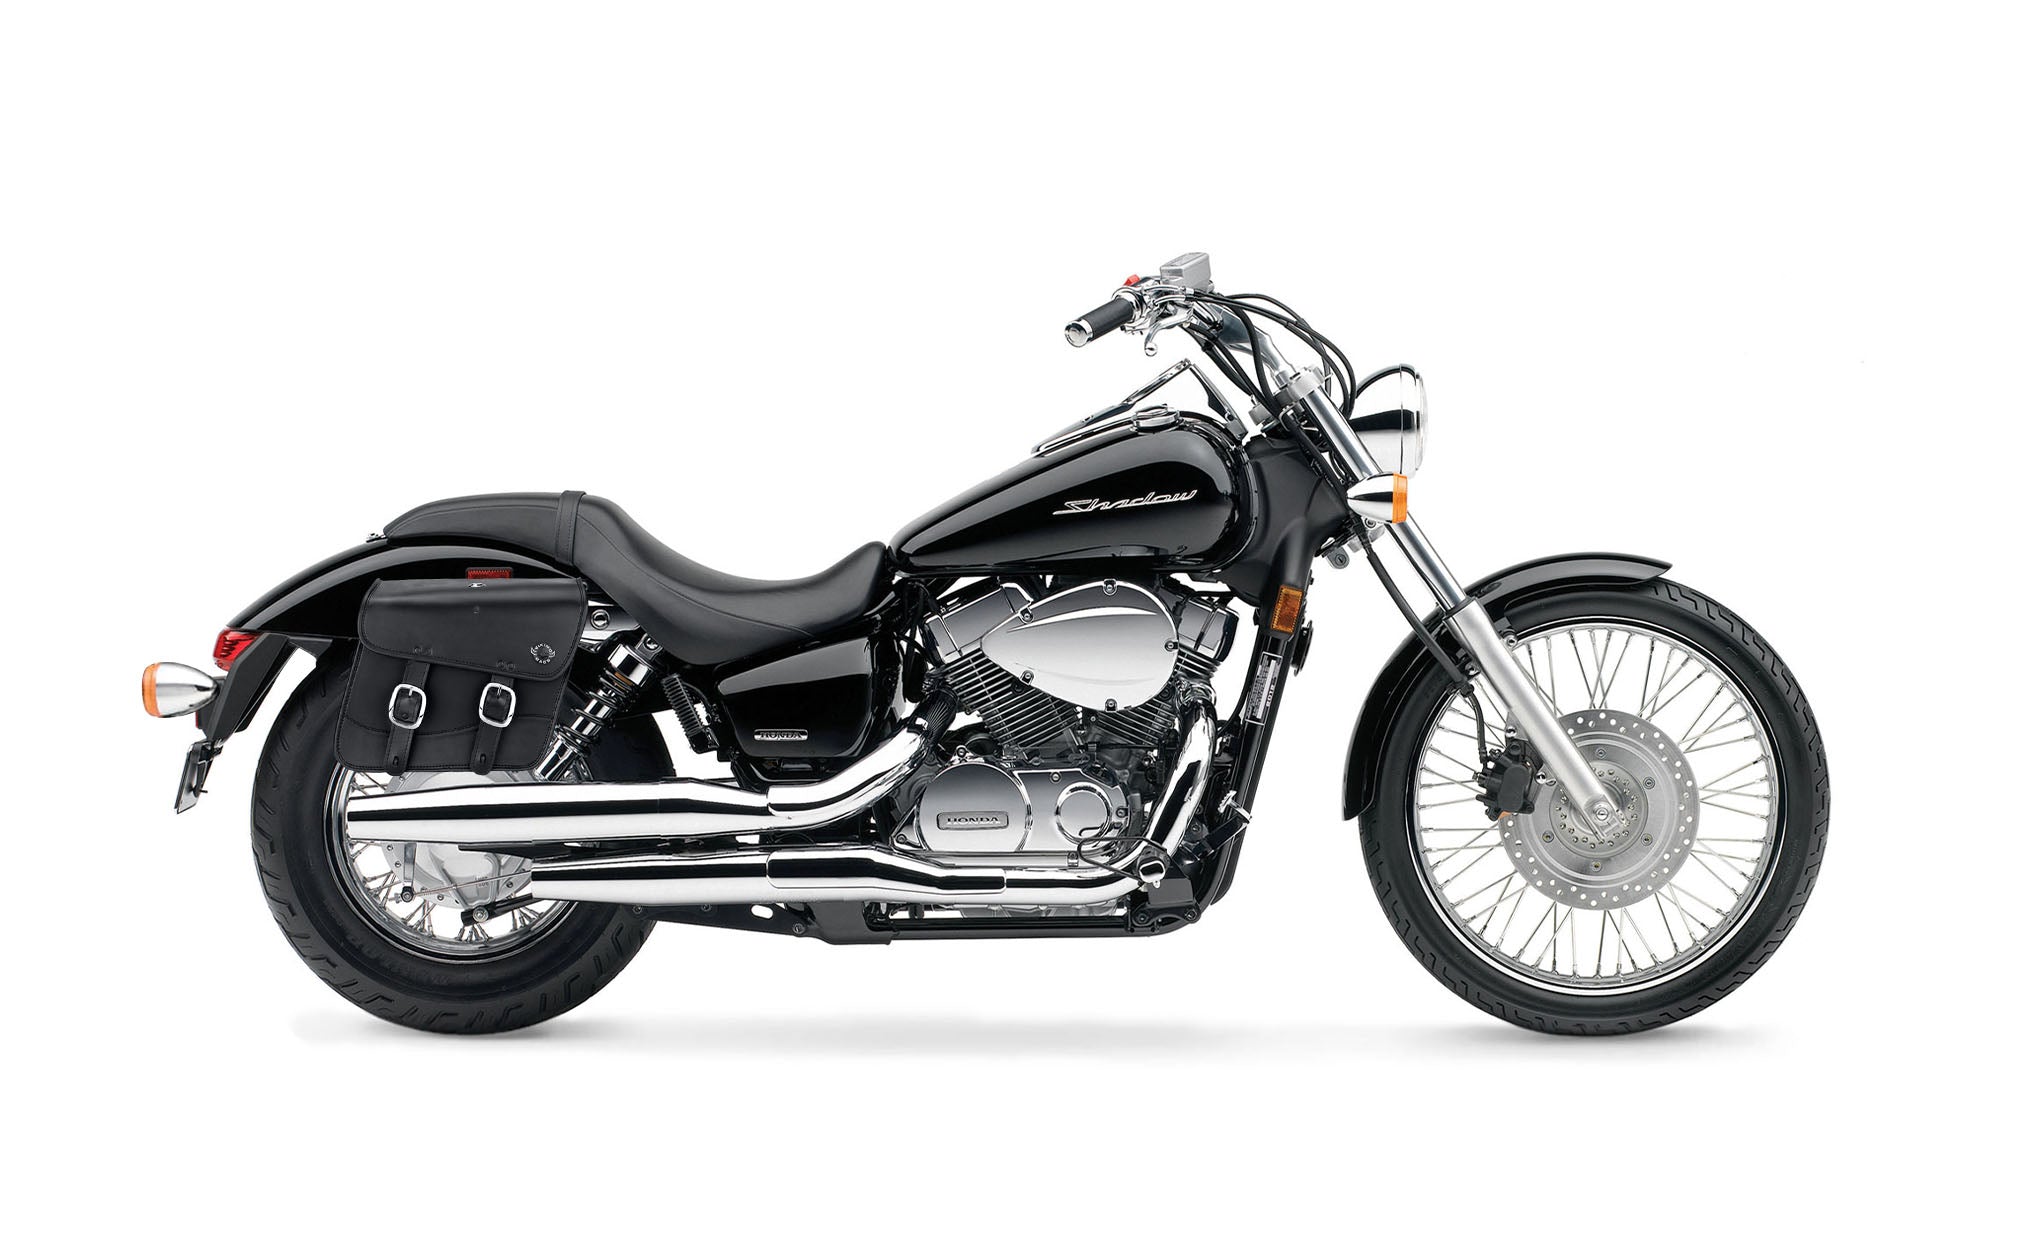 Viking Thor Medium Honda Shadow 750 Spirit Incl C2 Leather Motorcycle Saddlebags on Bike Photo @expand